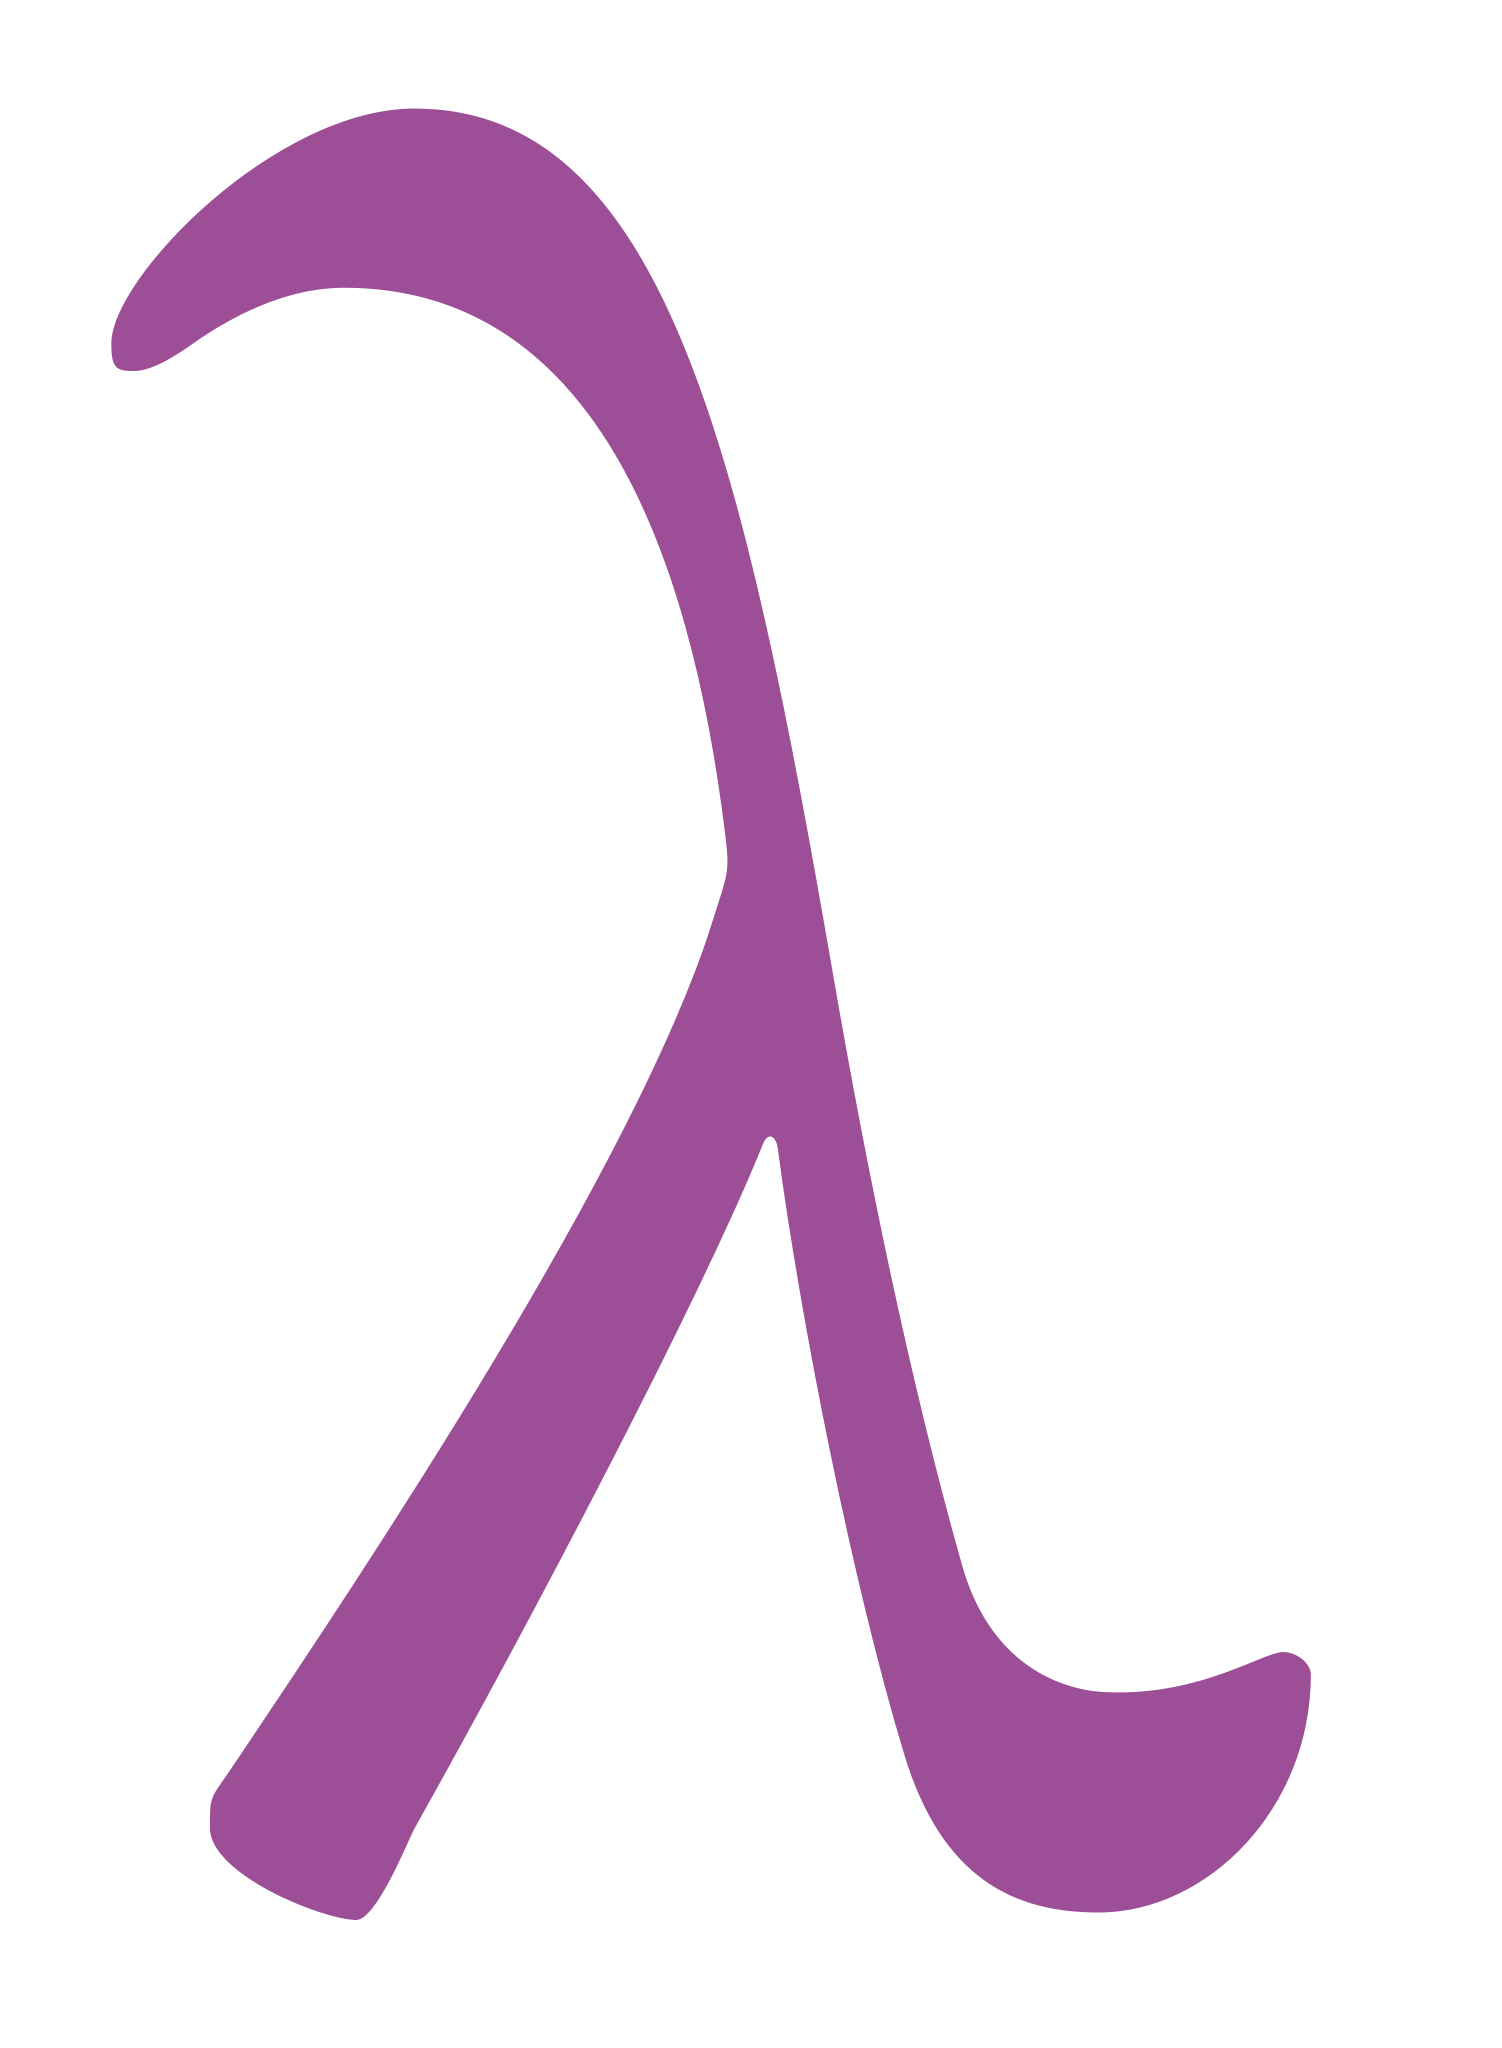 File:Lambda-letter-lowercase-symbol-Garamond.svg - Wikipedia